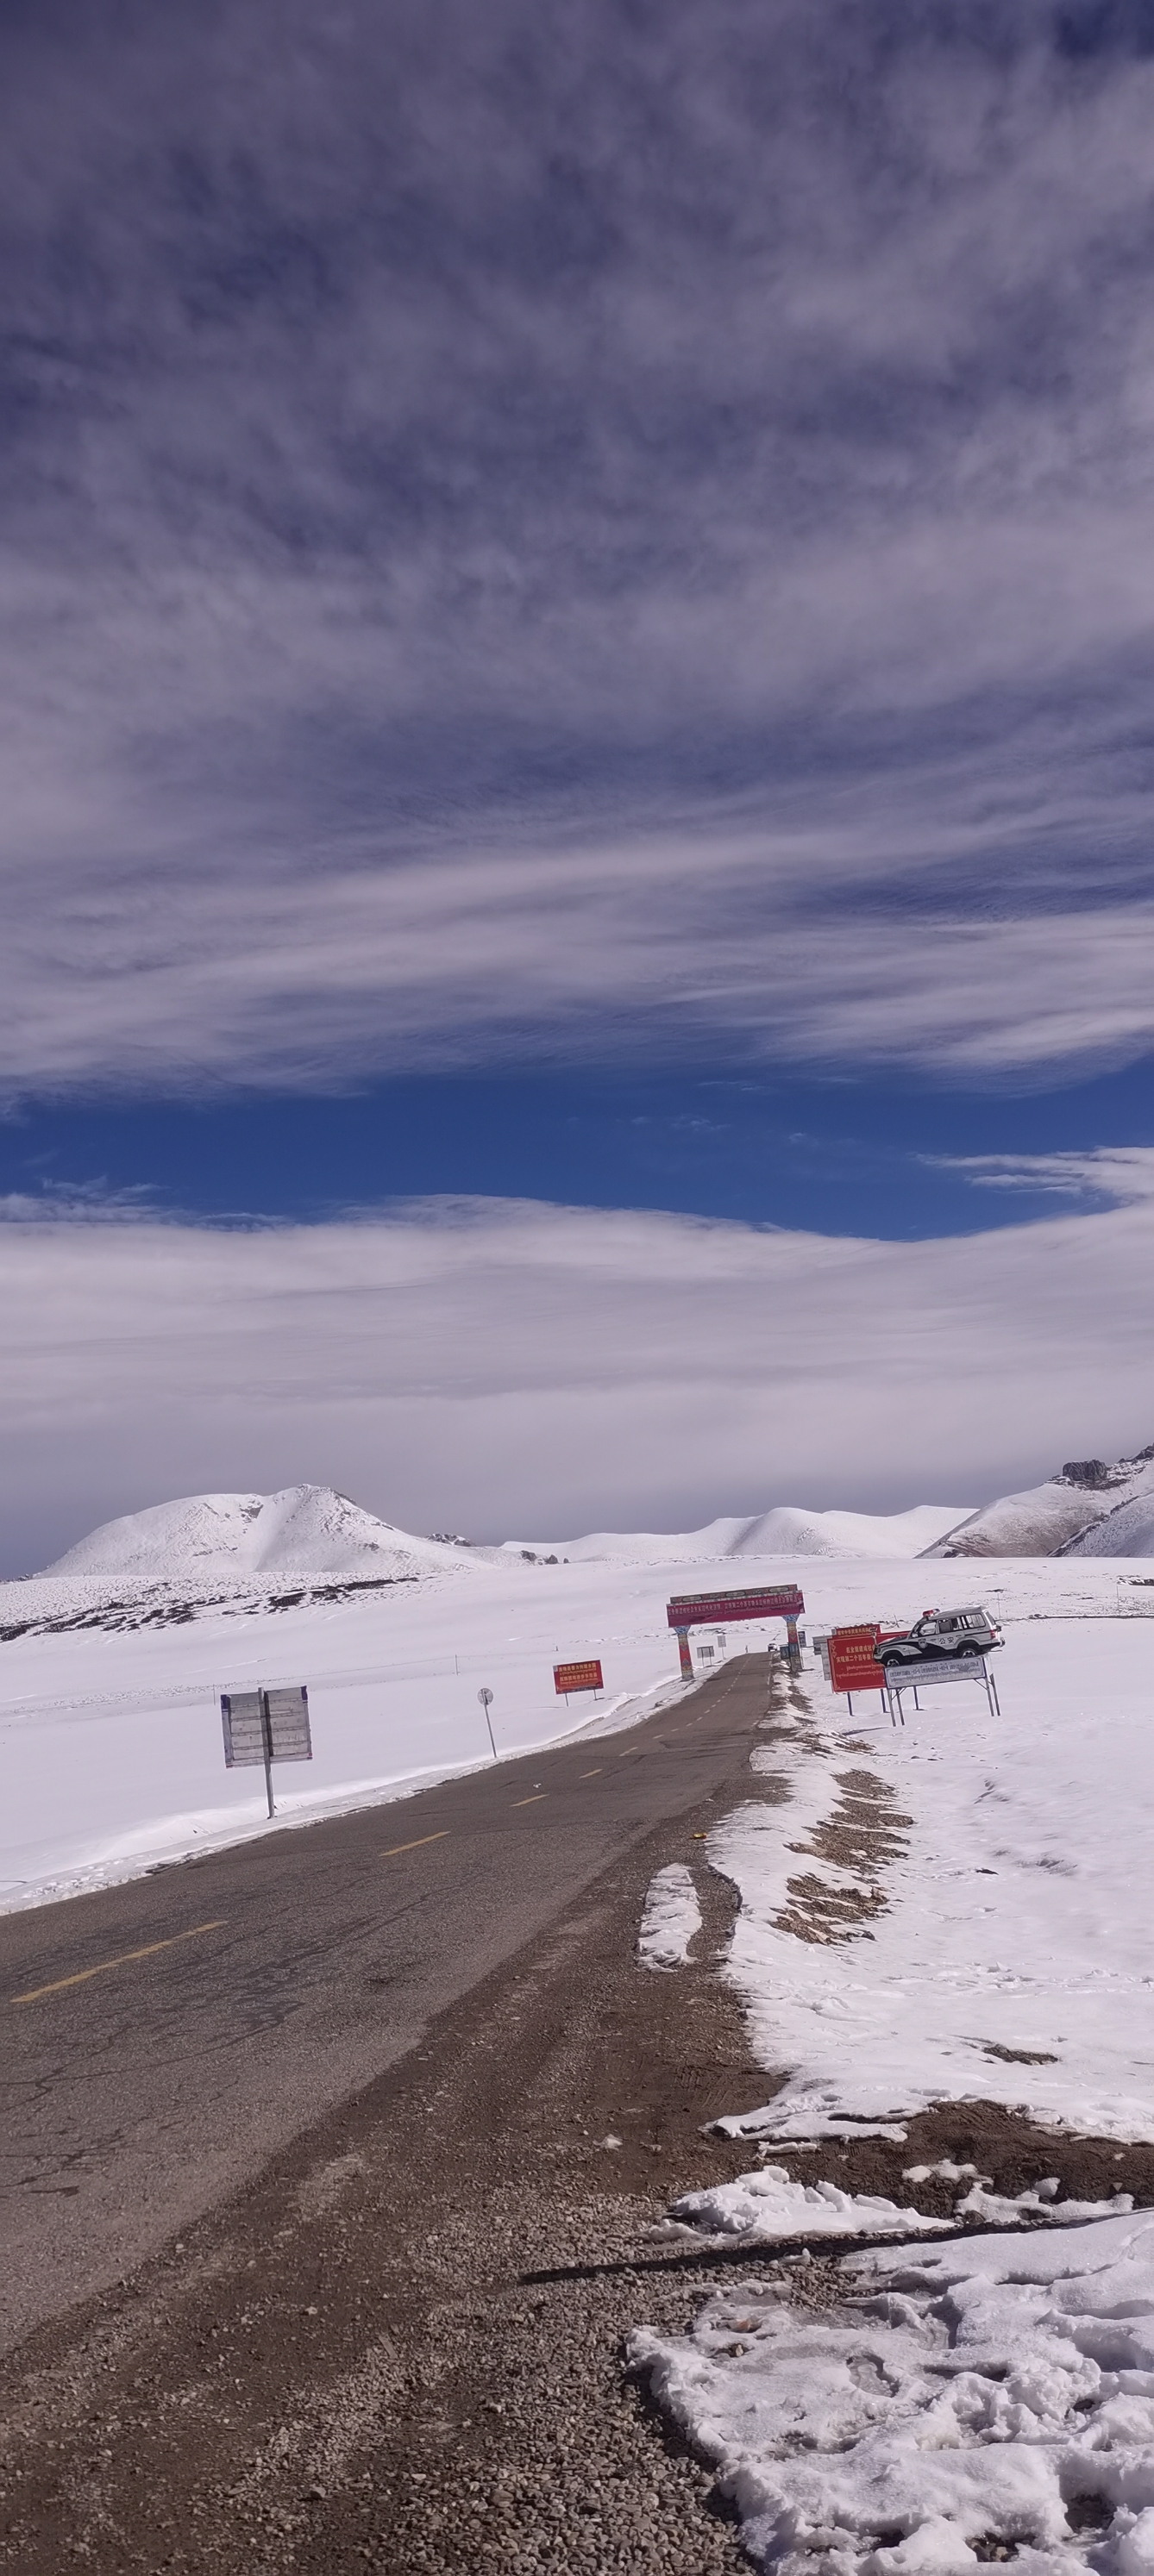 自驾，察瓦龙到察隅一百多公里，走了一天，全程还是烂路，期间翻越了三个海拨四千多的雪山，一路雪景，碧蓝